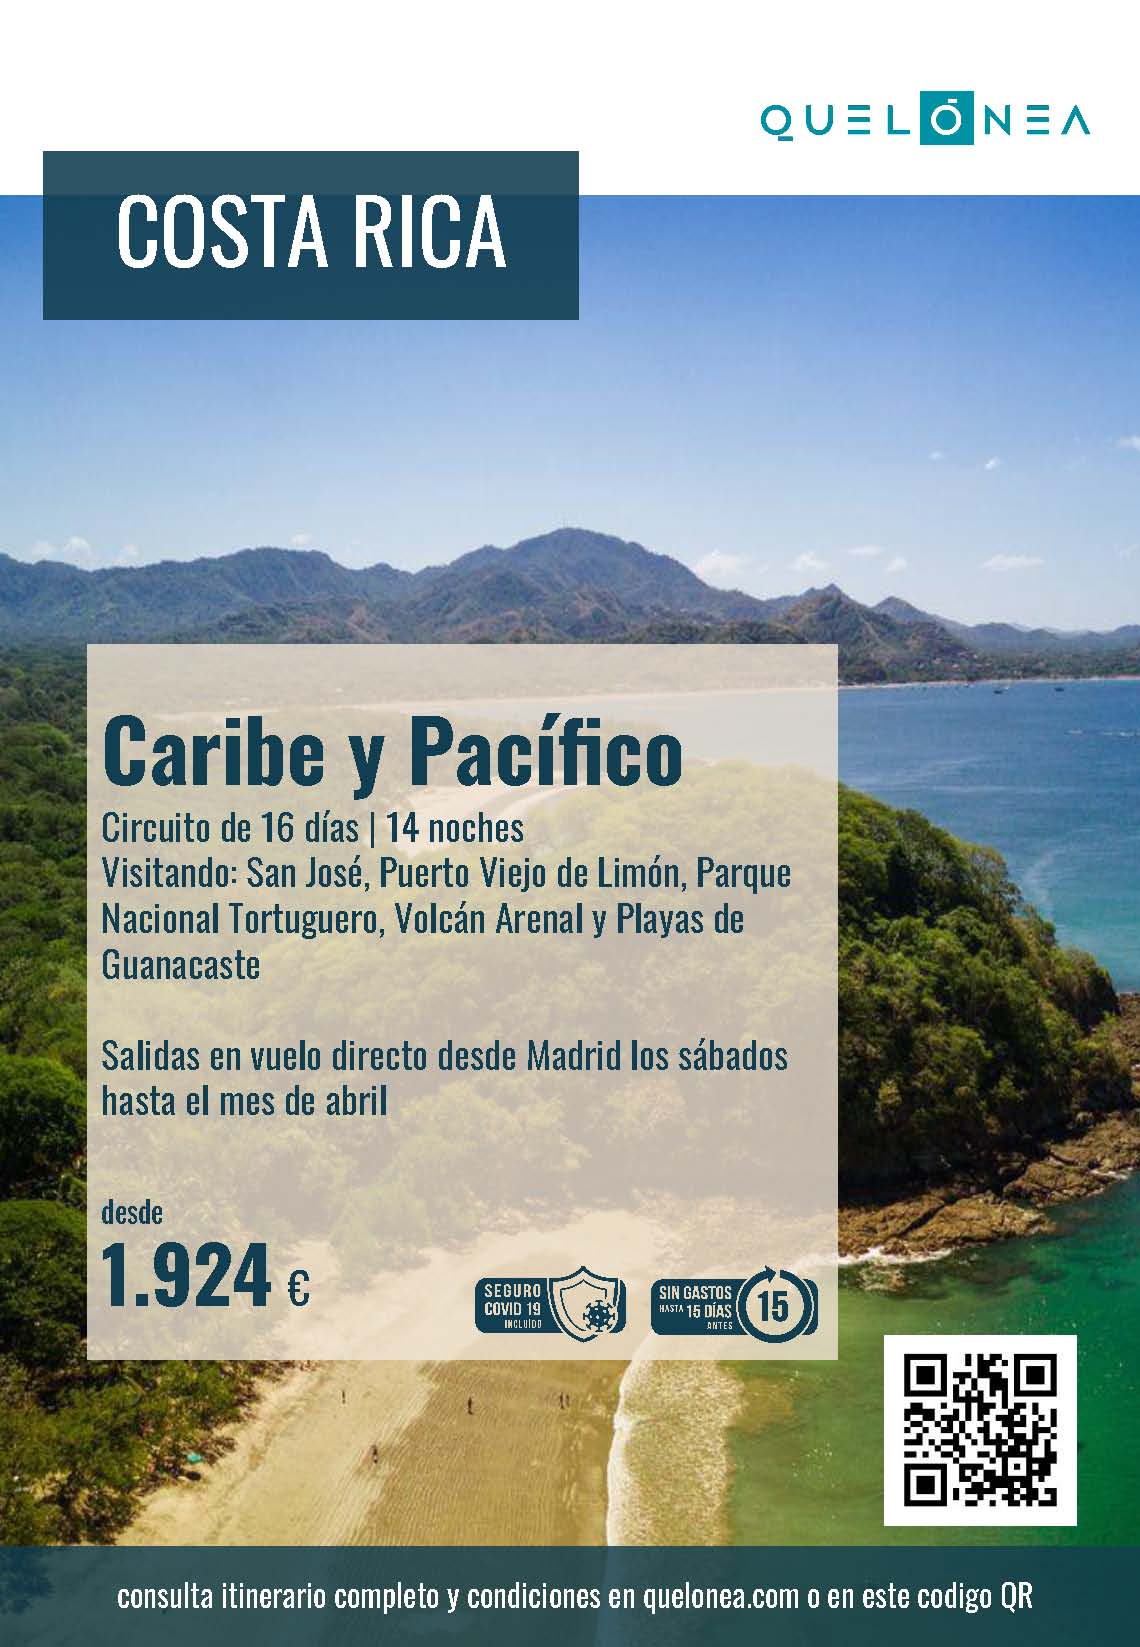 Oferta Quelonea Costa Rica Caribe y Pacifico 16 dias Noviembre 2021 a Abril 2022 vuelo directo desde Madrid